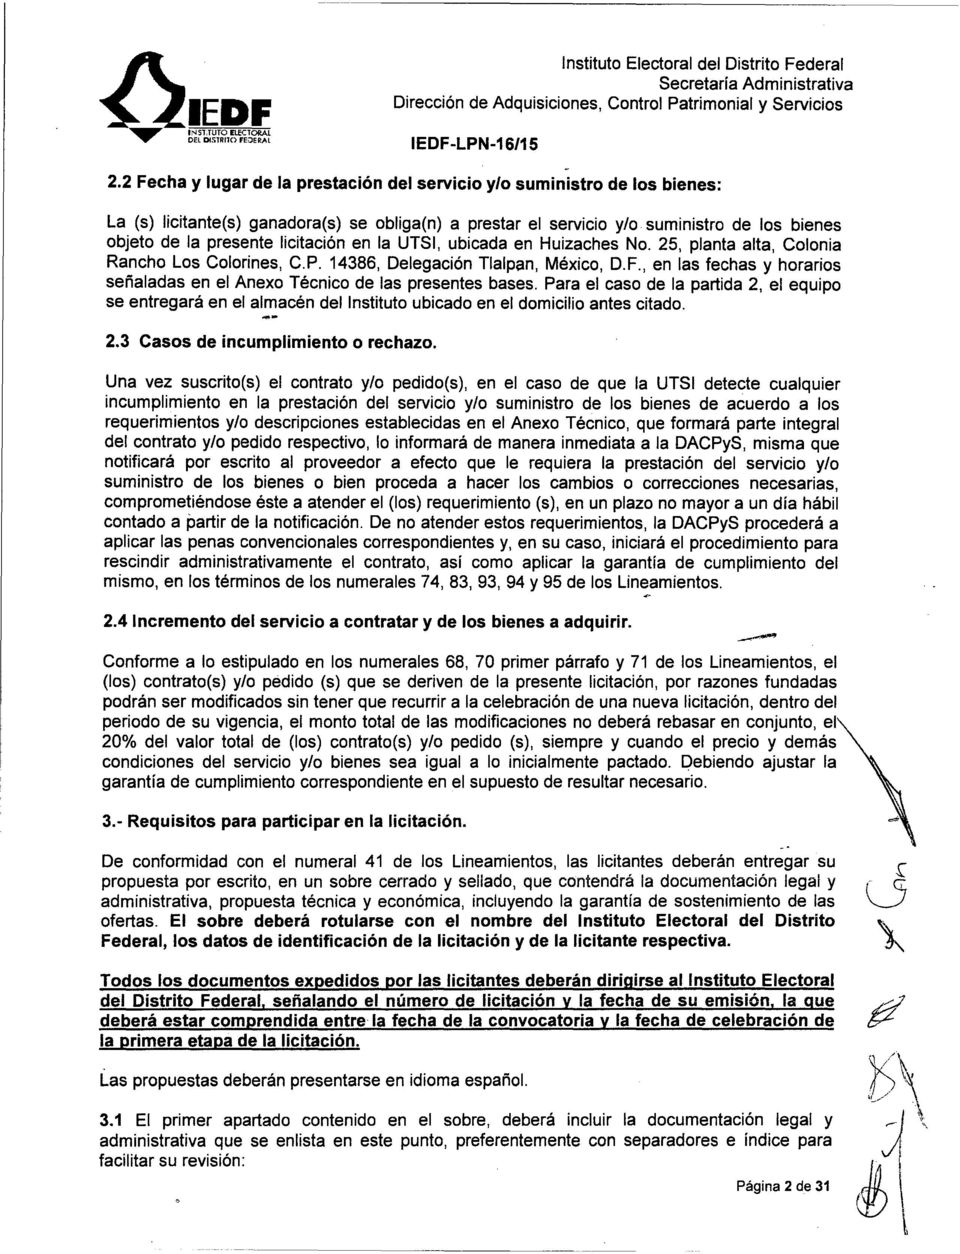 licitación en la UTSI, ubicada en Huizaches No. 25, planta alta, Colonia Rancho Los Colorines, C.P. 14386, Delegación Tlalpan, México, D.F.